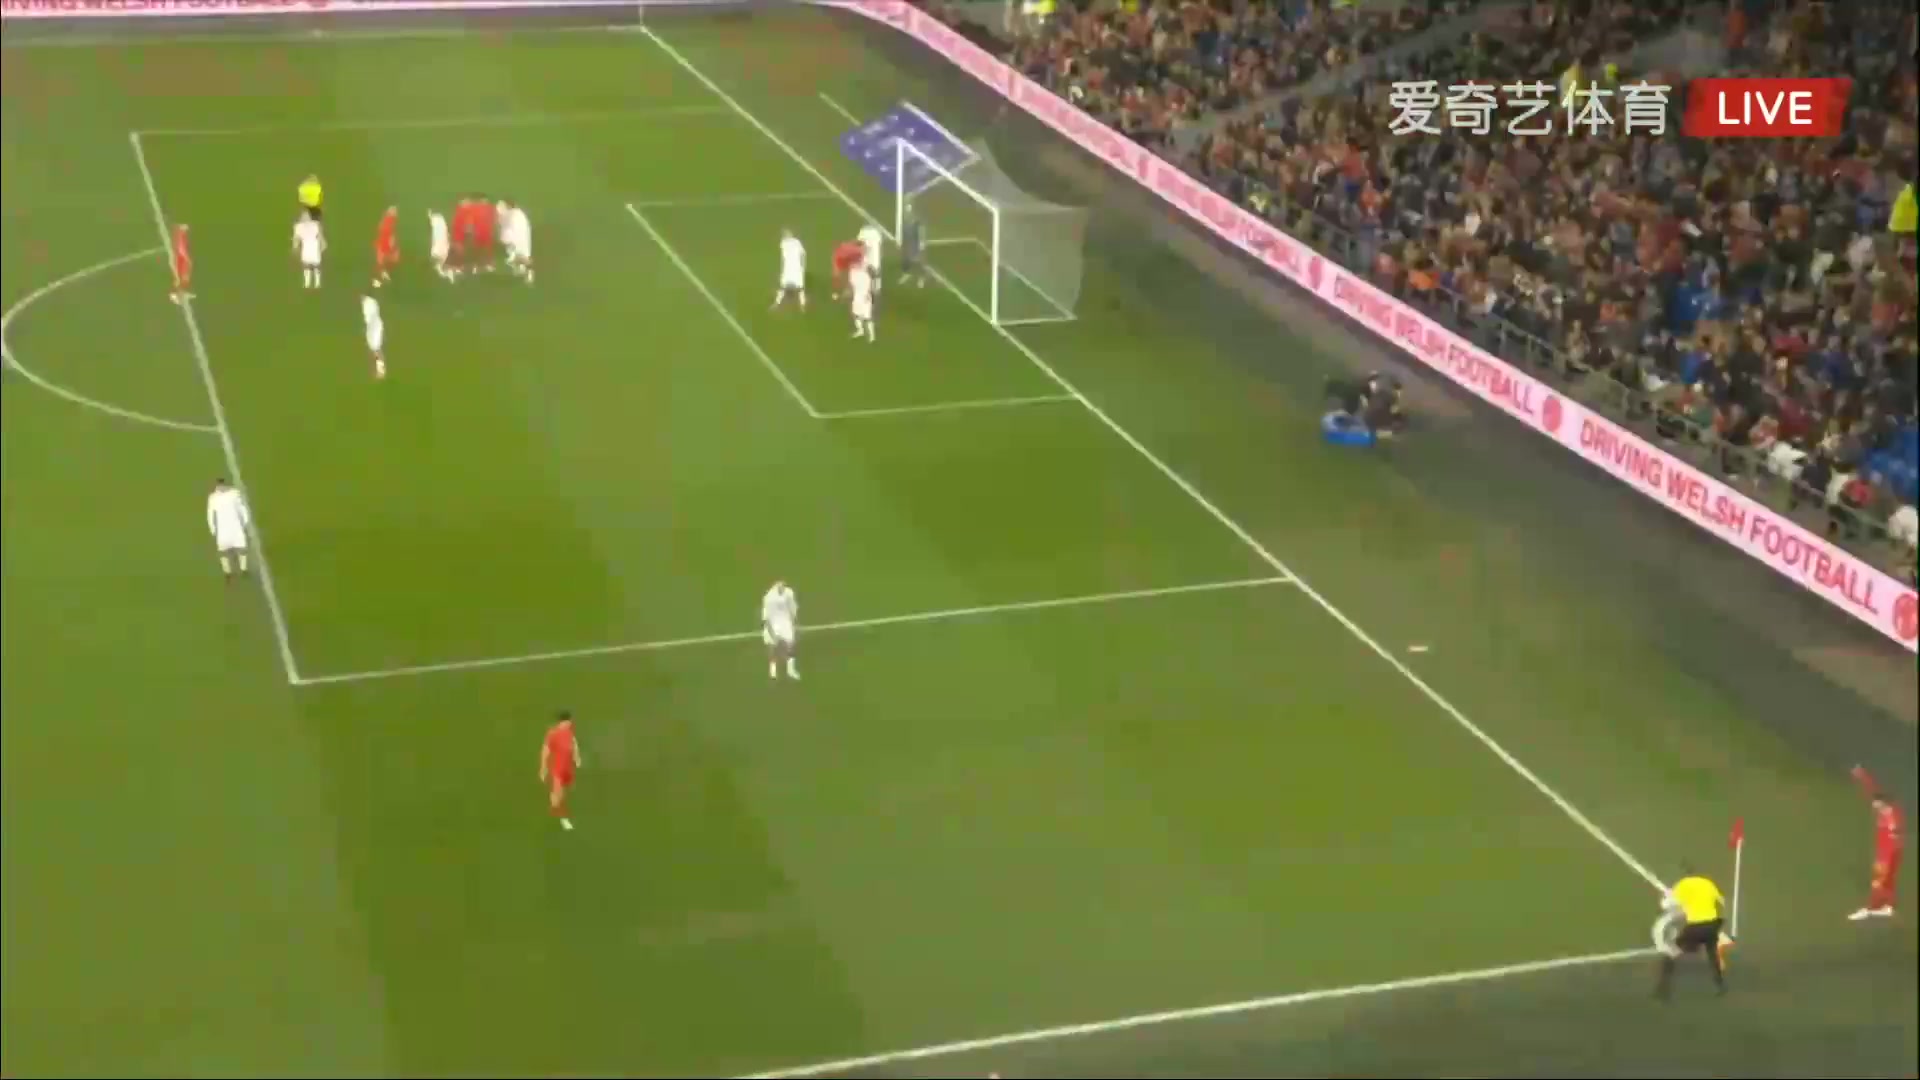 WCPEU Wales Vs Belarus Aaron Ramsey Goal in 2 min, Score 1:0